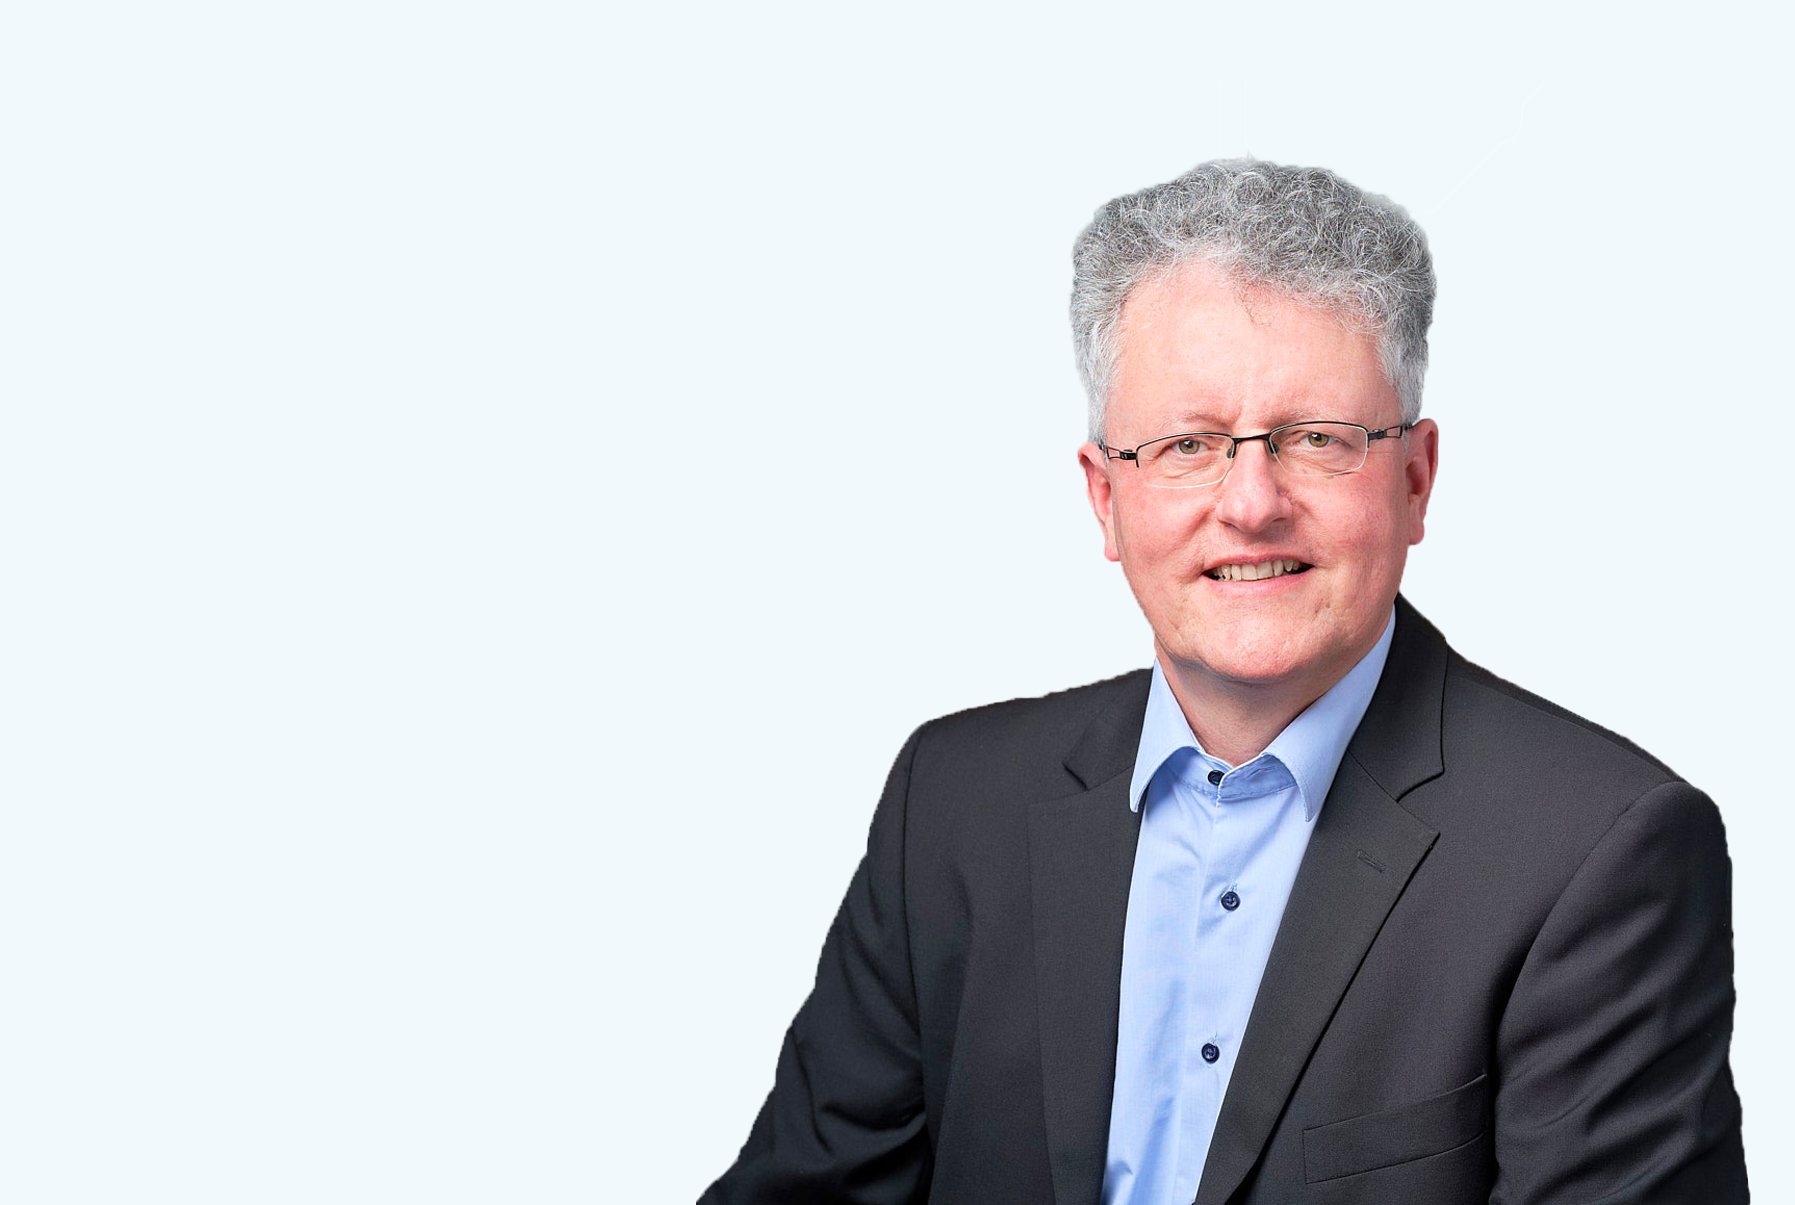  Dr. Hans Eichele  profile image